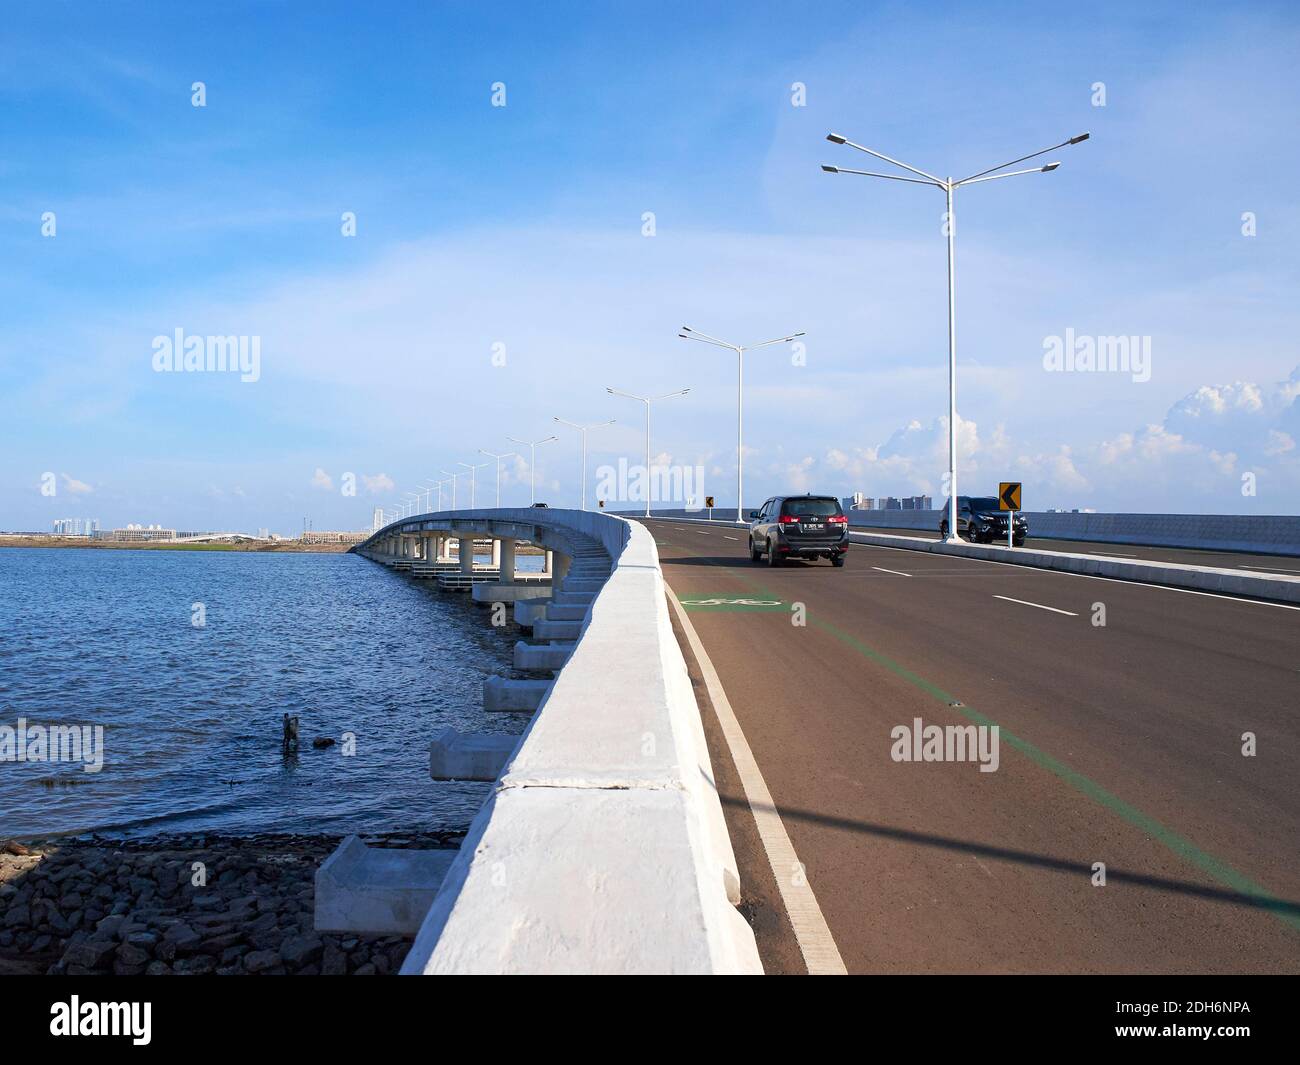 Jakarta, Indonésie - 13 novembre 2020 : pont de garde-corps en béton reliant la zone côtière de réhabilitation Pantai Indah Kapuk, dans le nord de Jakarta Banque D'Images